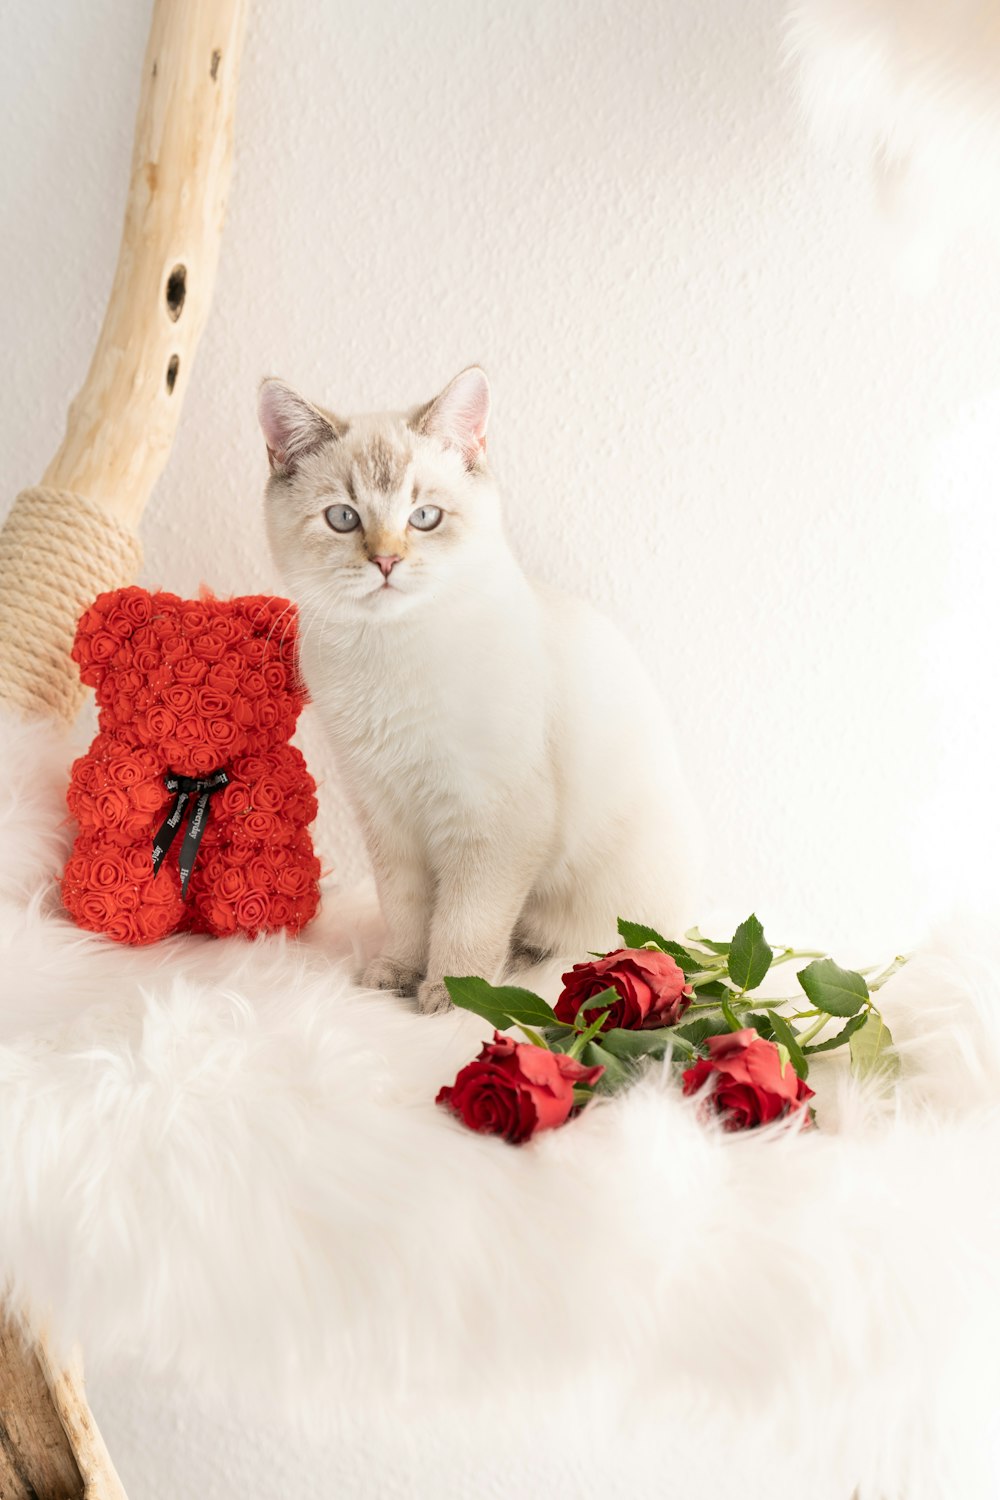 빨간 베개 옆에 앉아 있는 흰 고양이